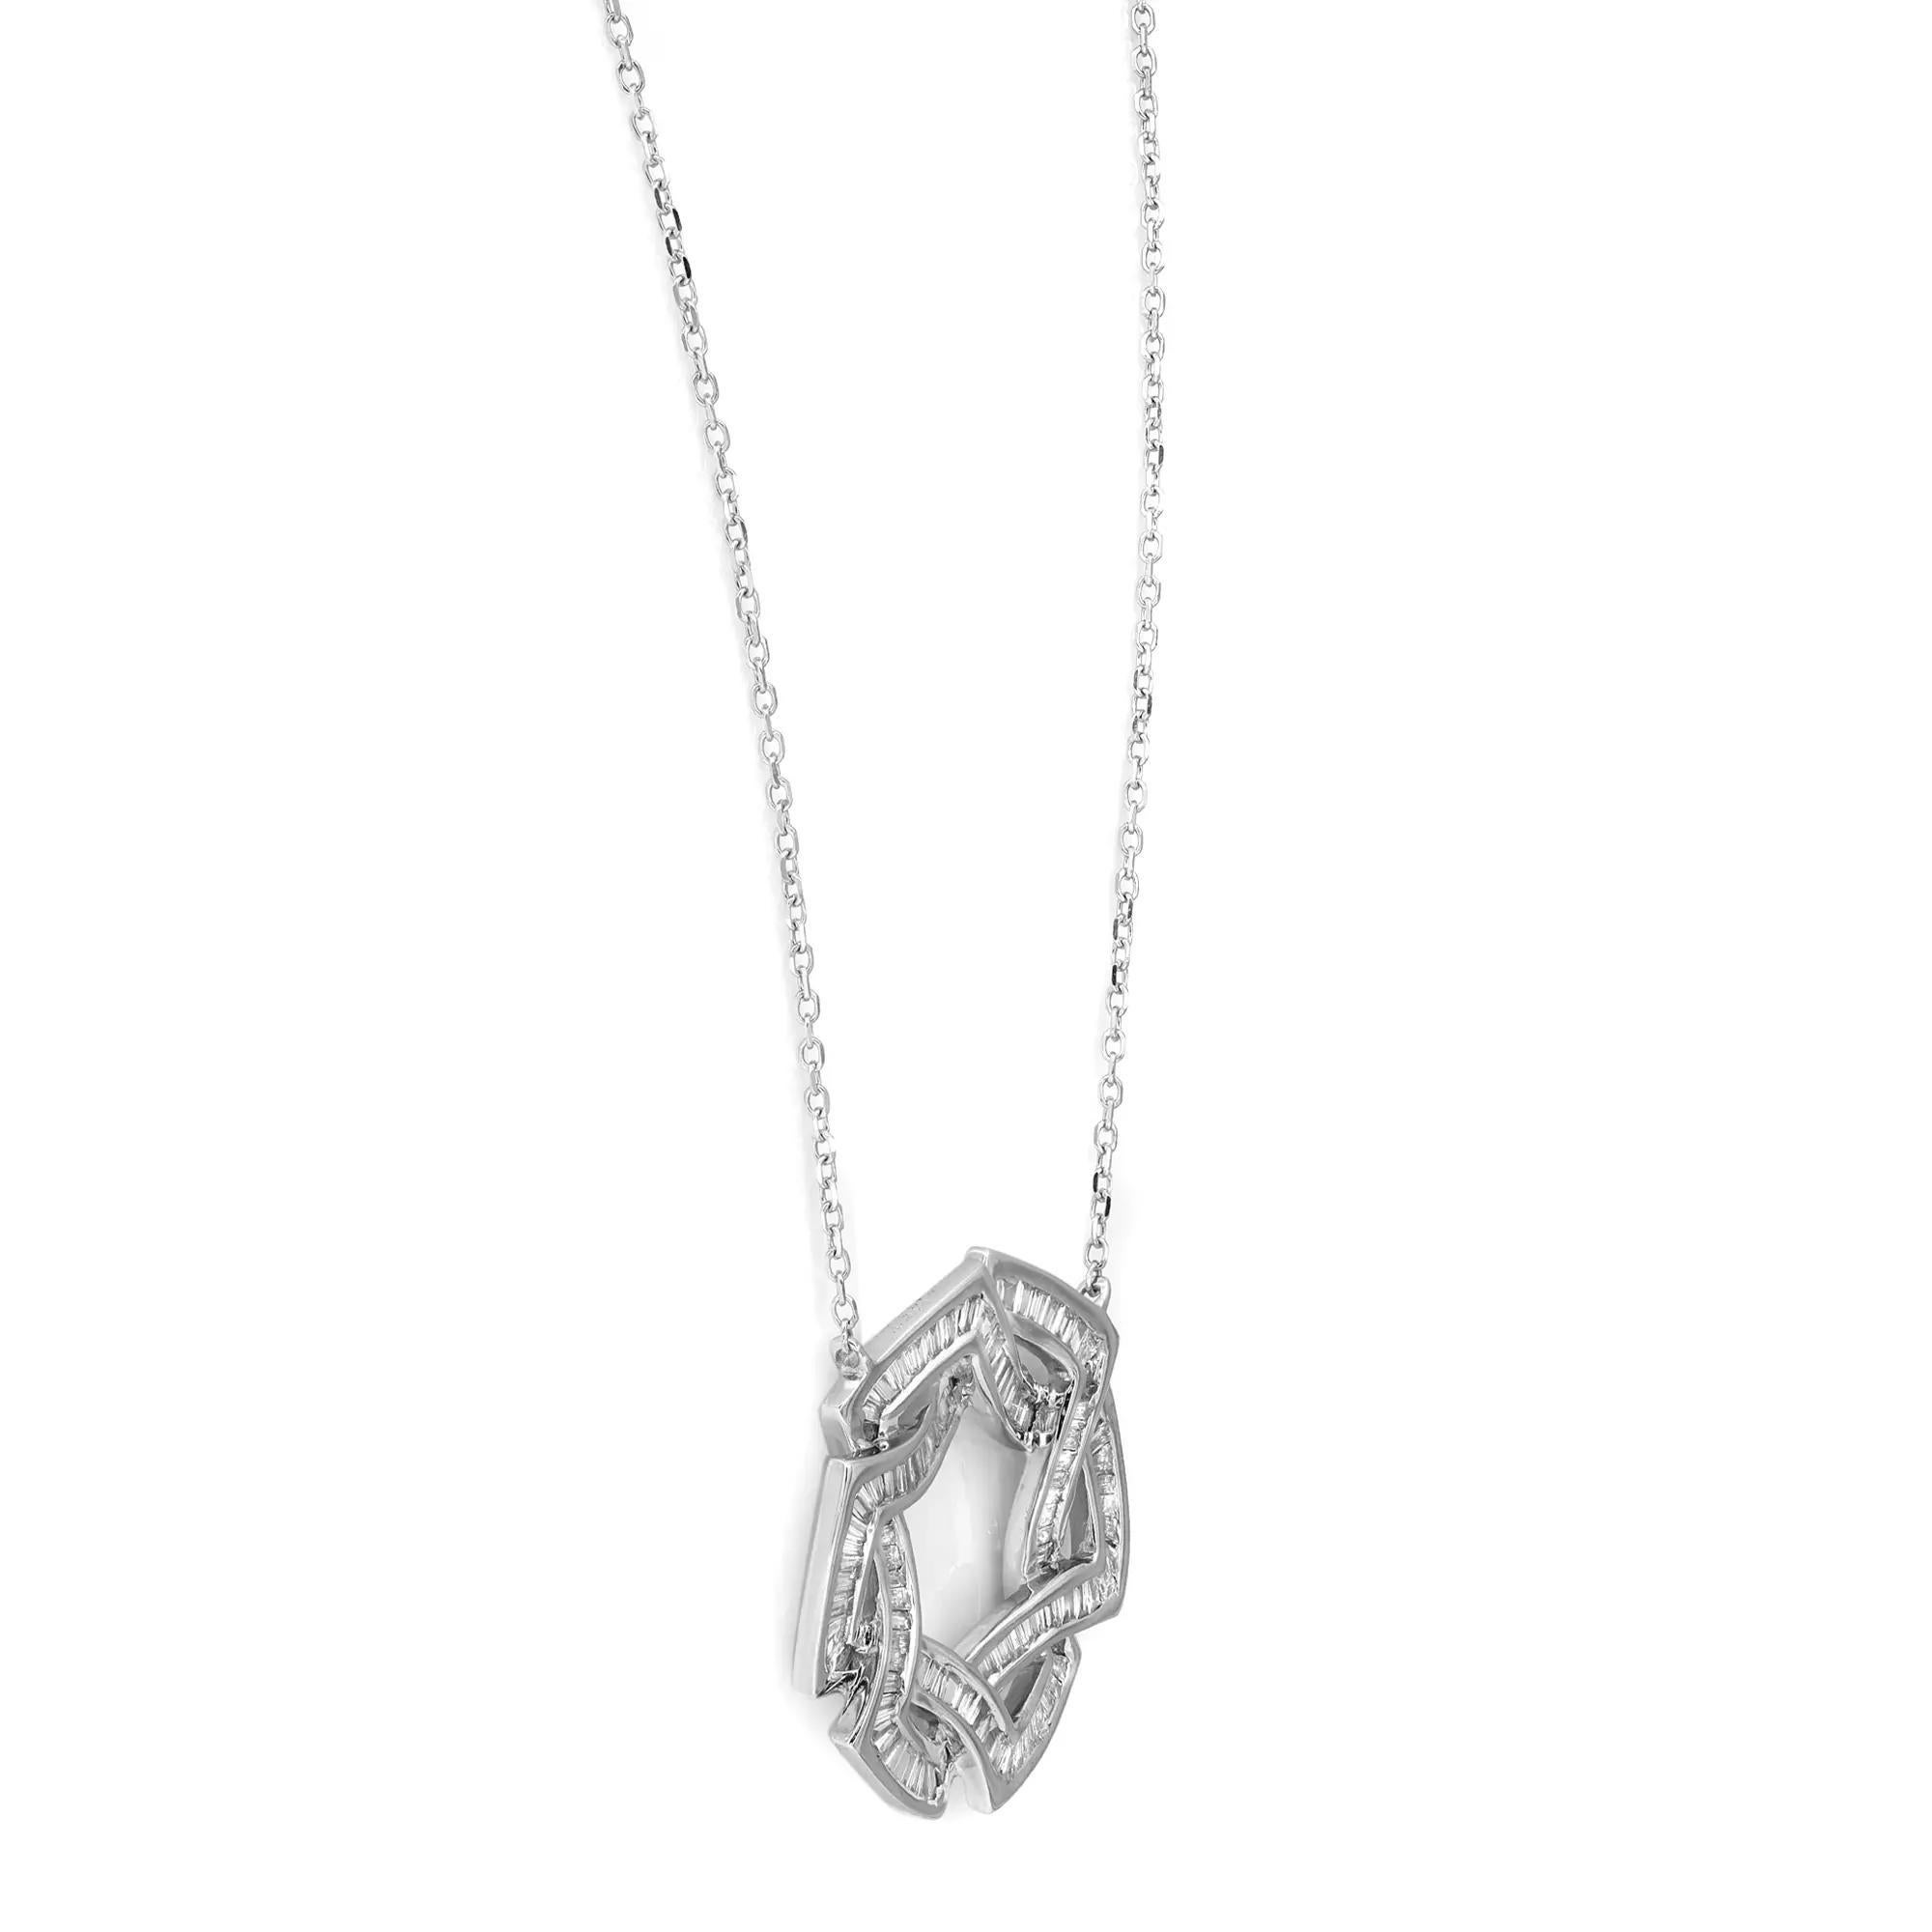 Modern Secret Circles Baguette Diamond Pendant Necklace 14K White Gold 0.60Cttw For Sale